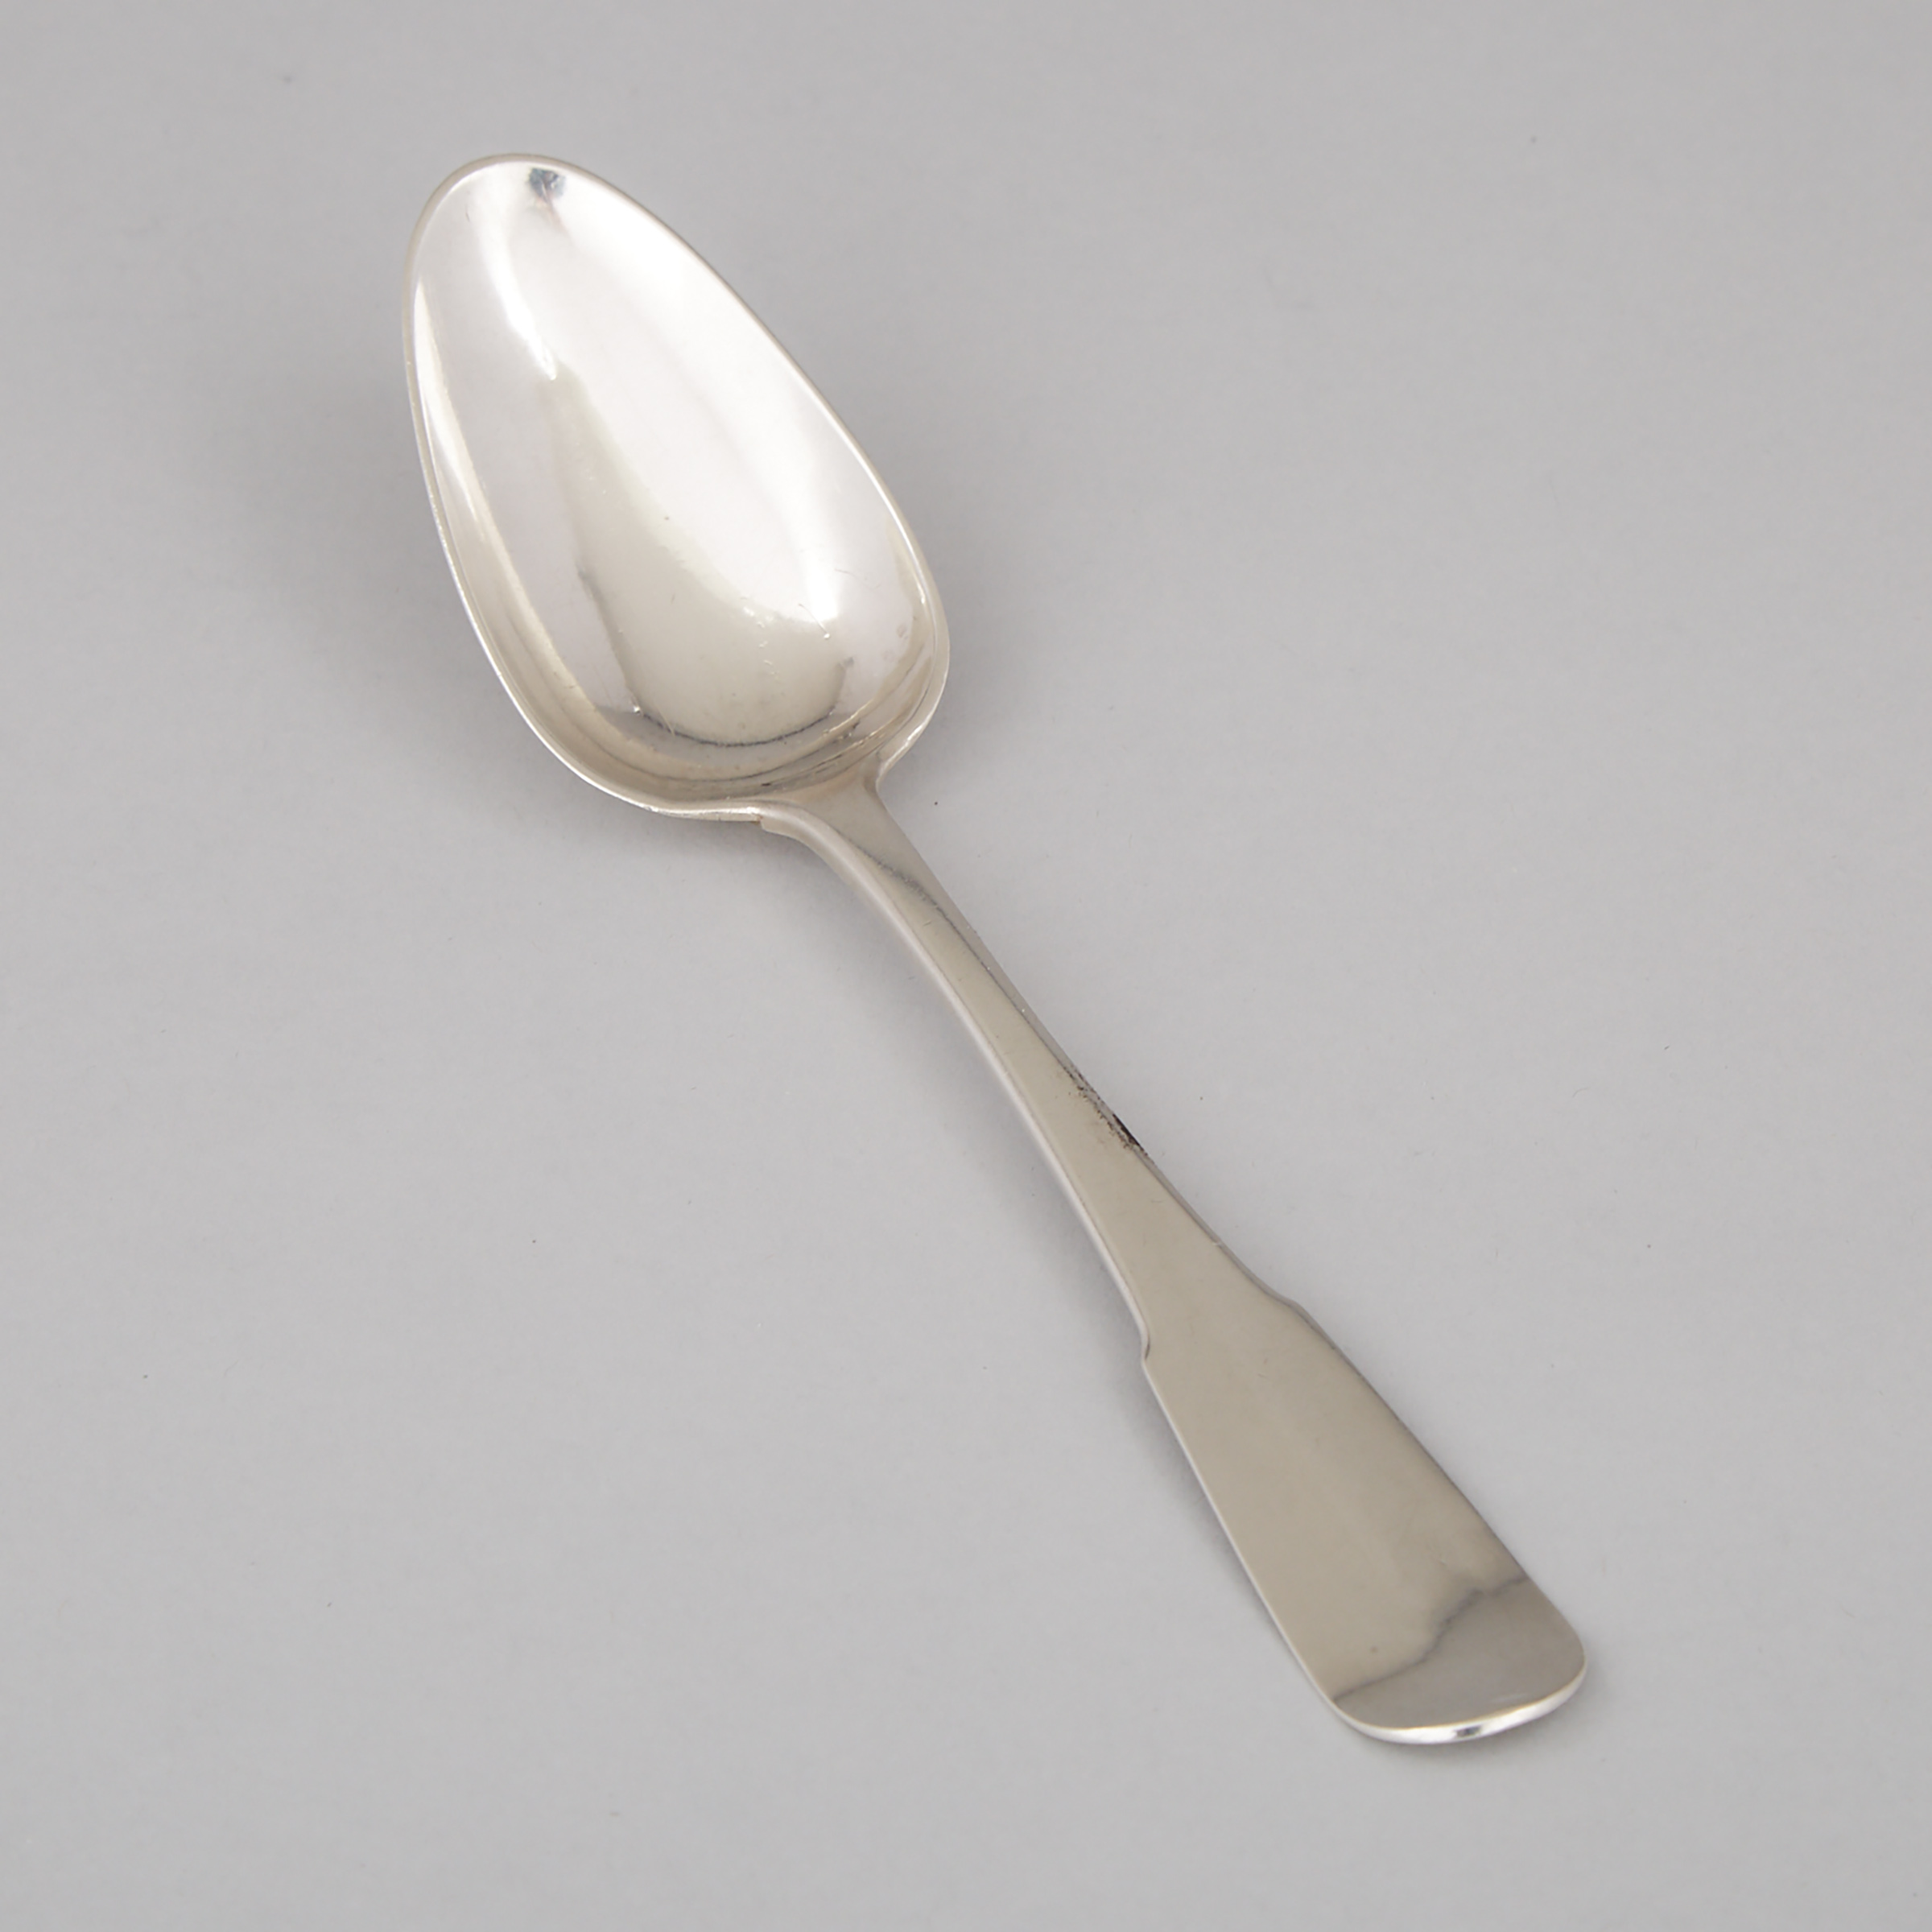 Canadian Silver Table Spoon, Pierre Huguet dit Latour, c.1800